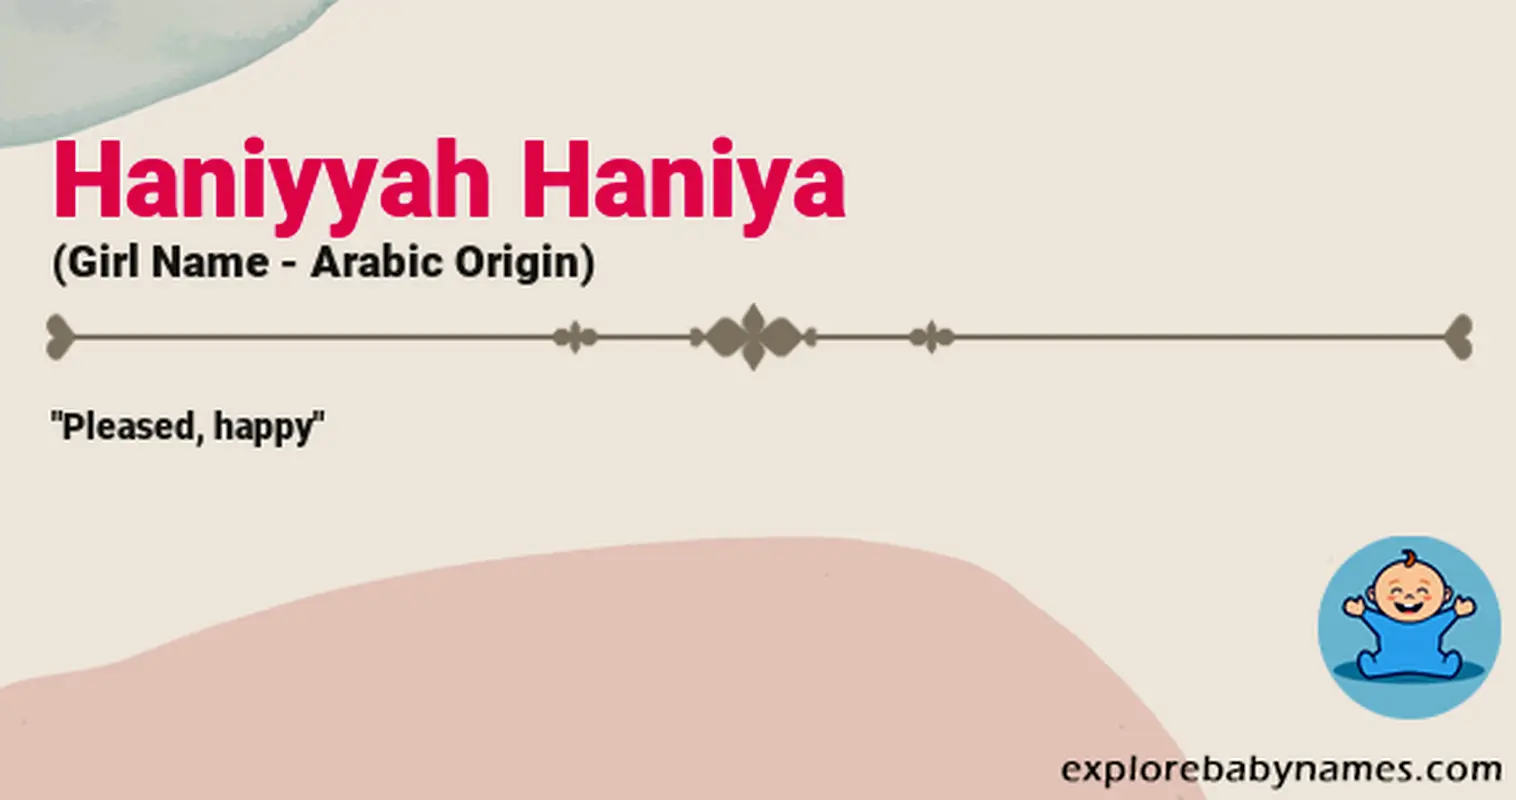 Meaning of Haniyyah Haniya